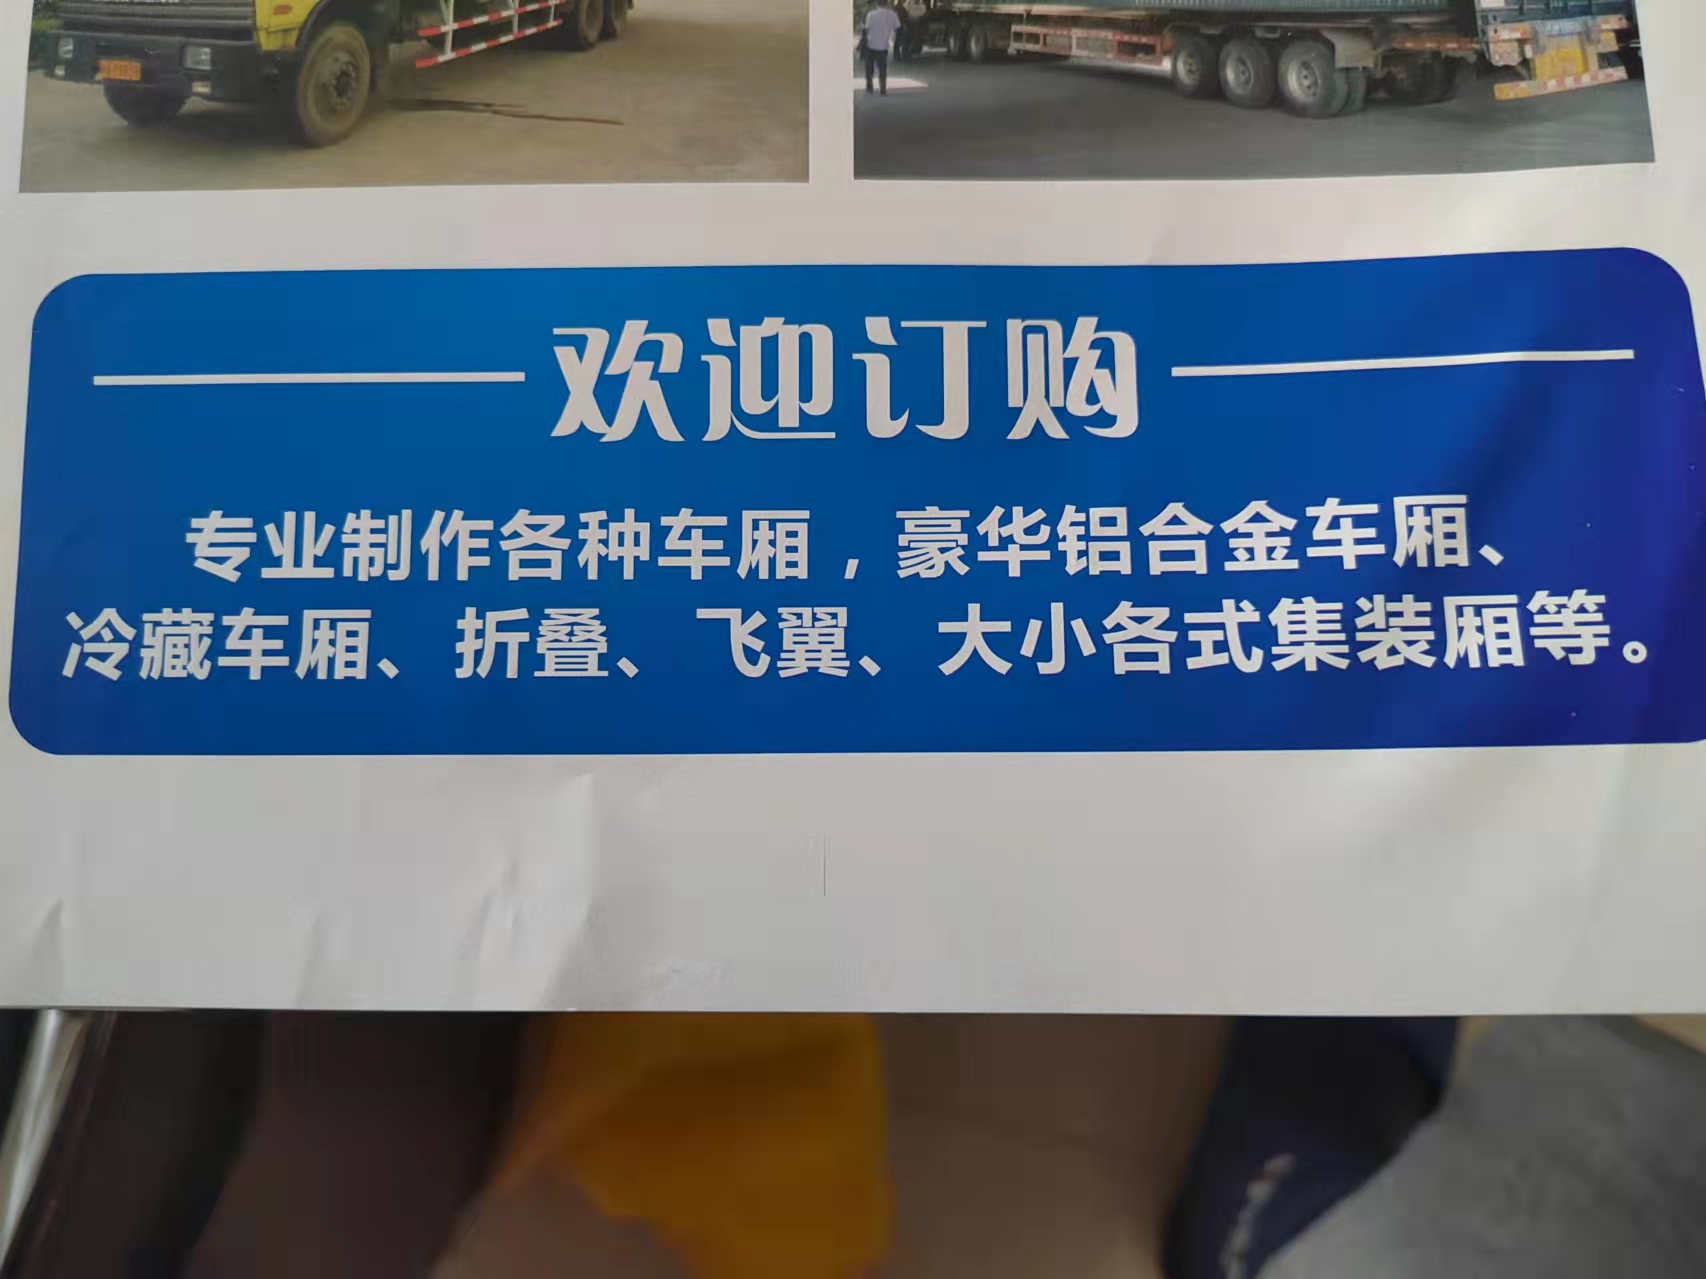 惠州市豪达车厢制造有限公司